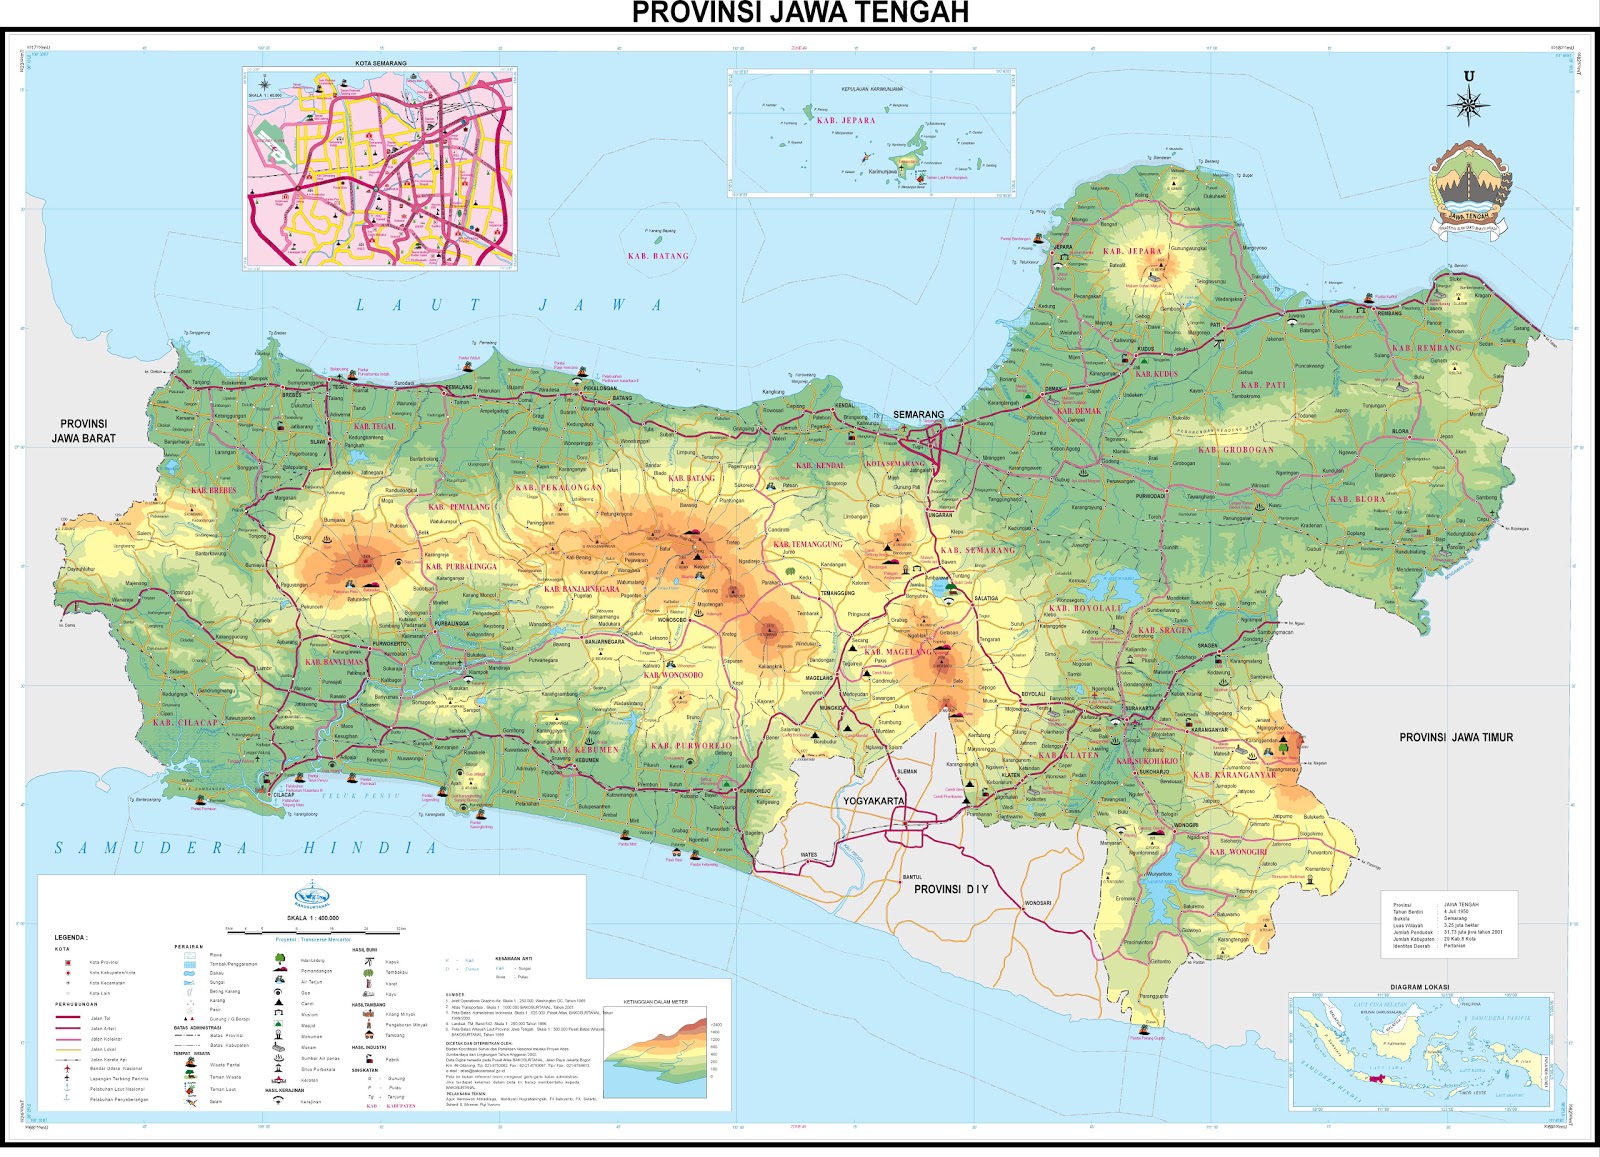 Peta Provinsi Jawa Tengah (Jateng)